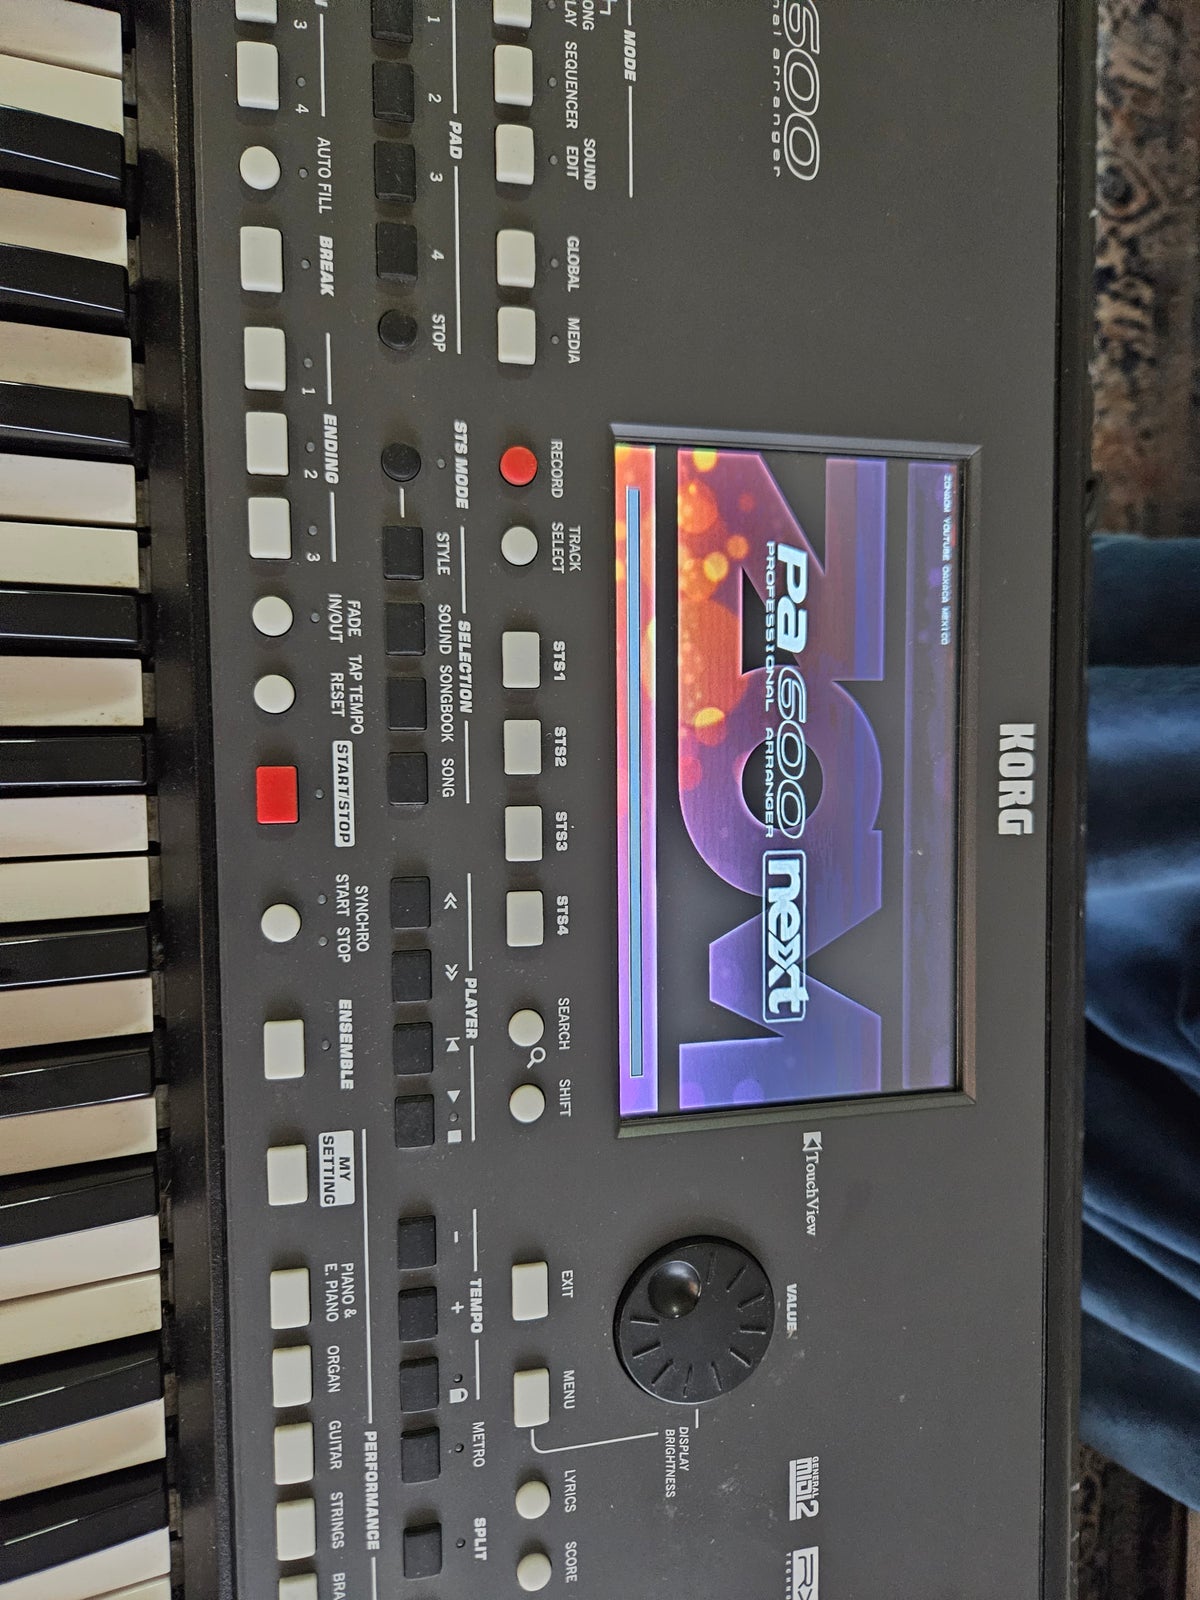 Keyboard, Korg Pa600